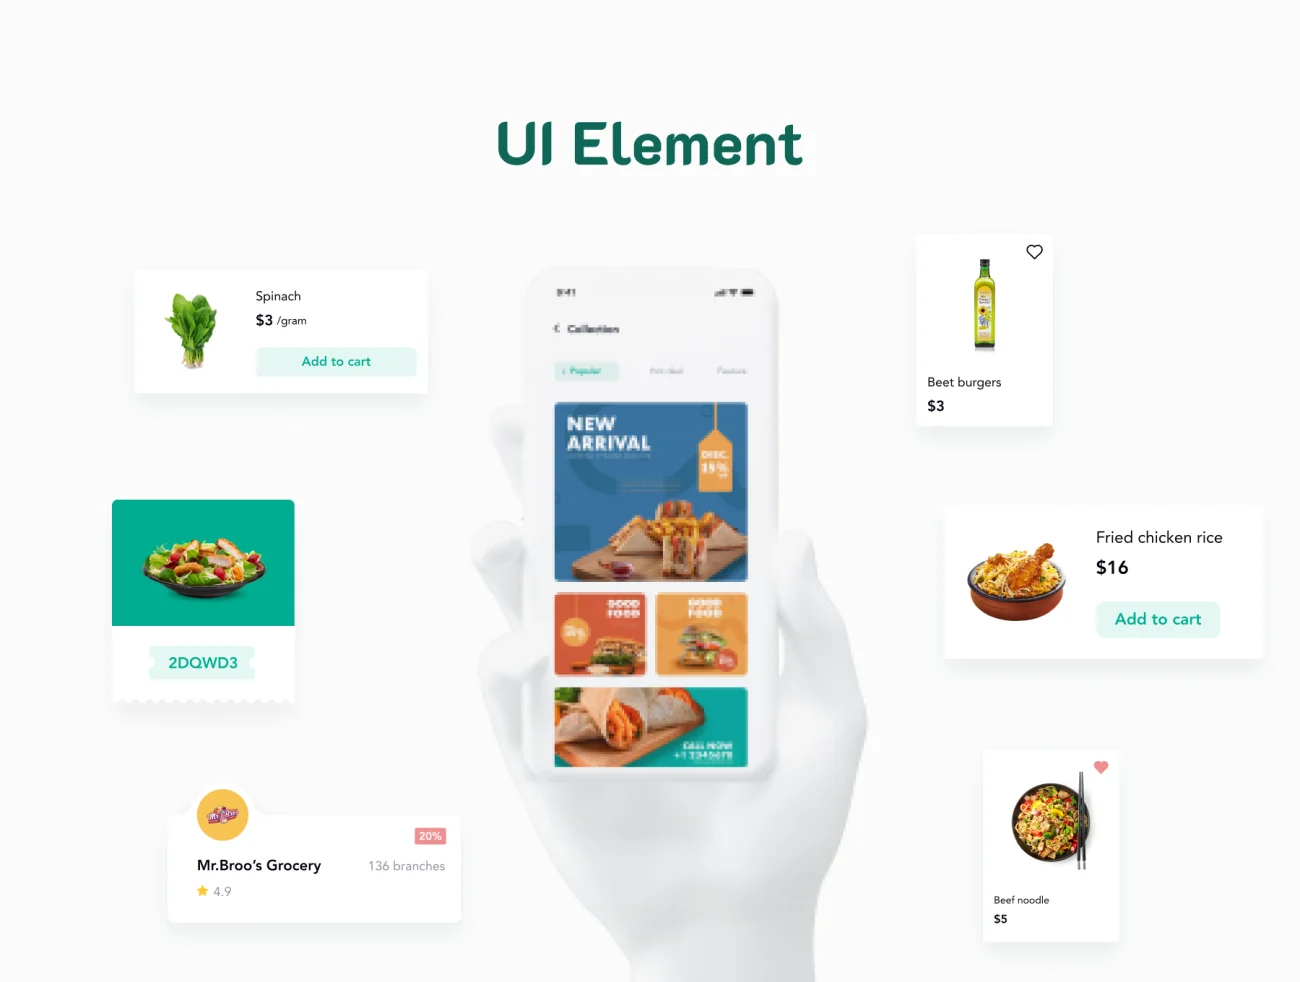 60屏美食外卖点餐配送应用设计套件 Fooddoor - Food delivery app-UI/UX、ui套件、主页、介绍、付款、出行、卡片式、应用、支付、网购、详情、预订-到位啦UI